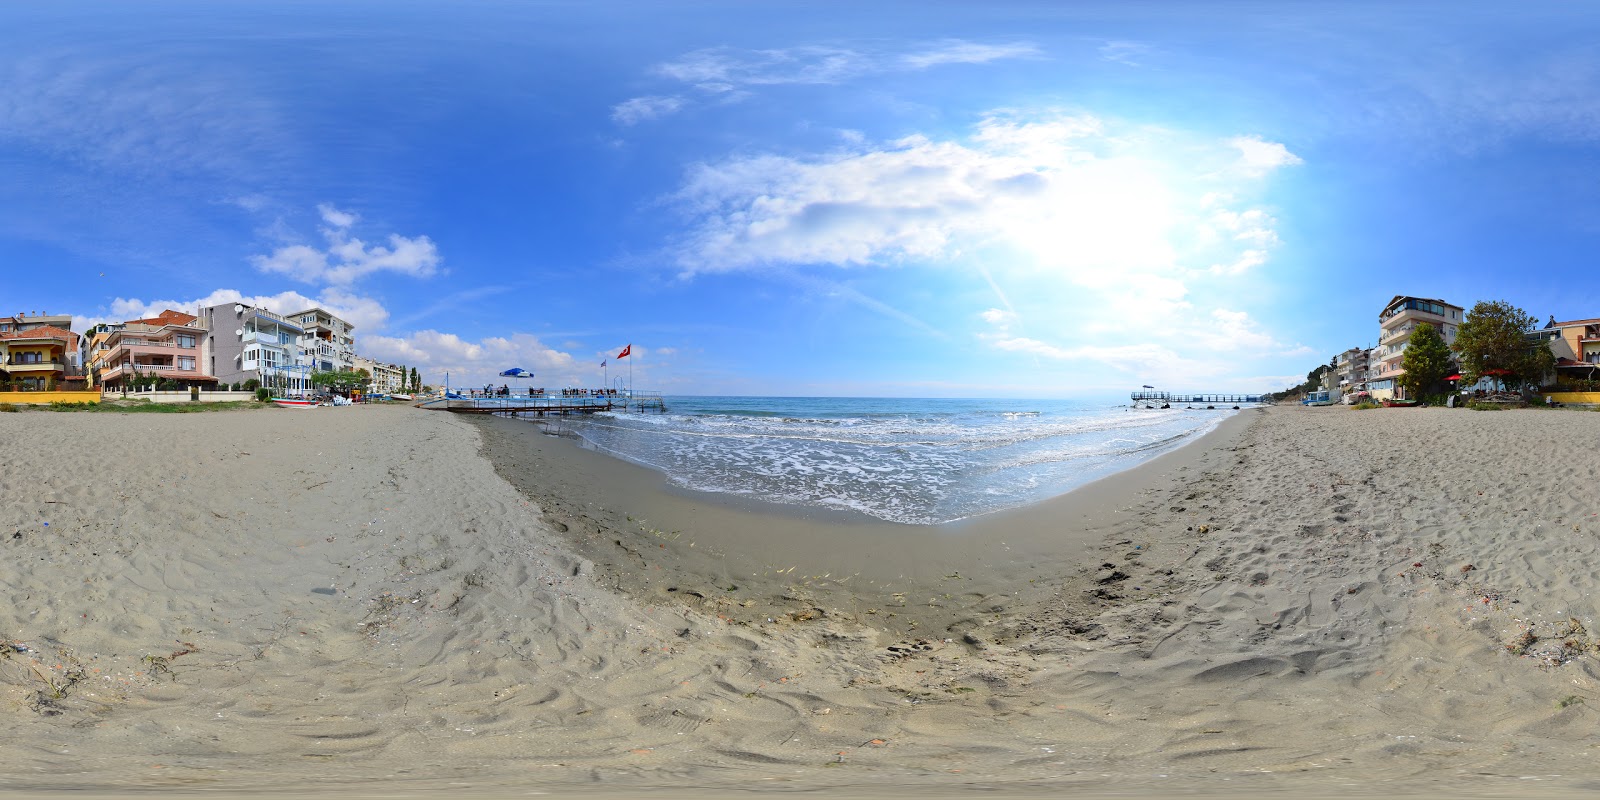 Photo de Altinova beach - endroit populaire parmi les connaisseurs de la détente